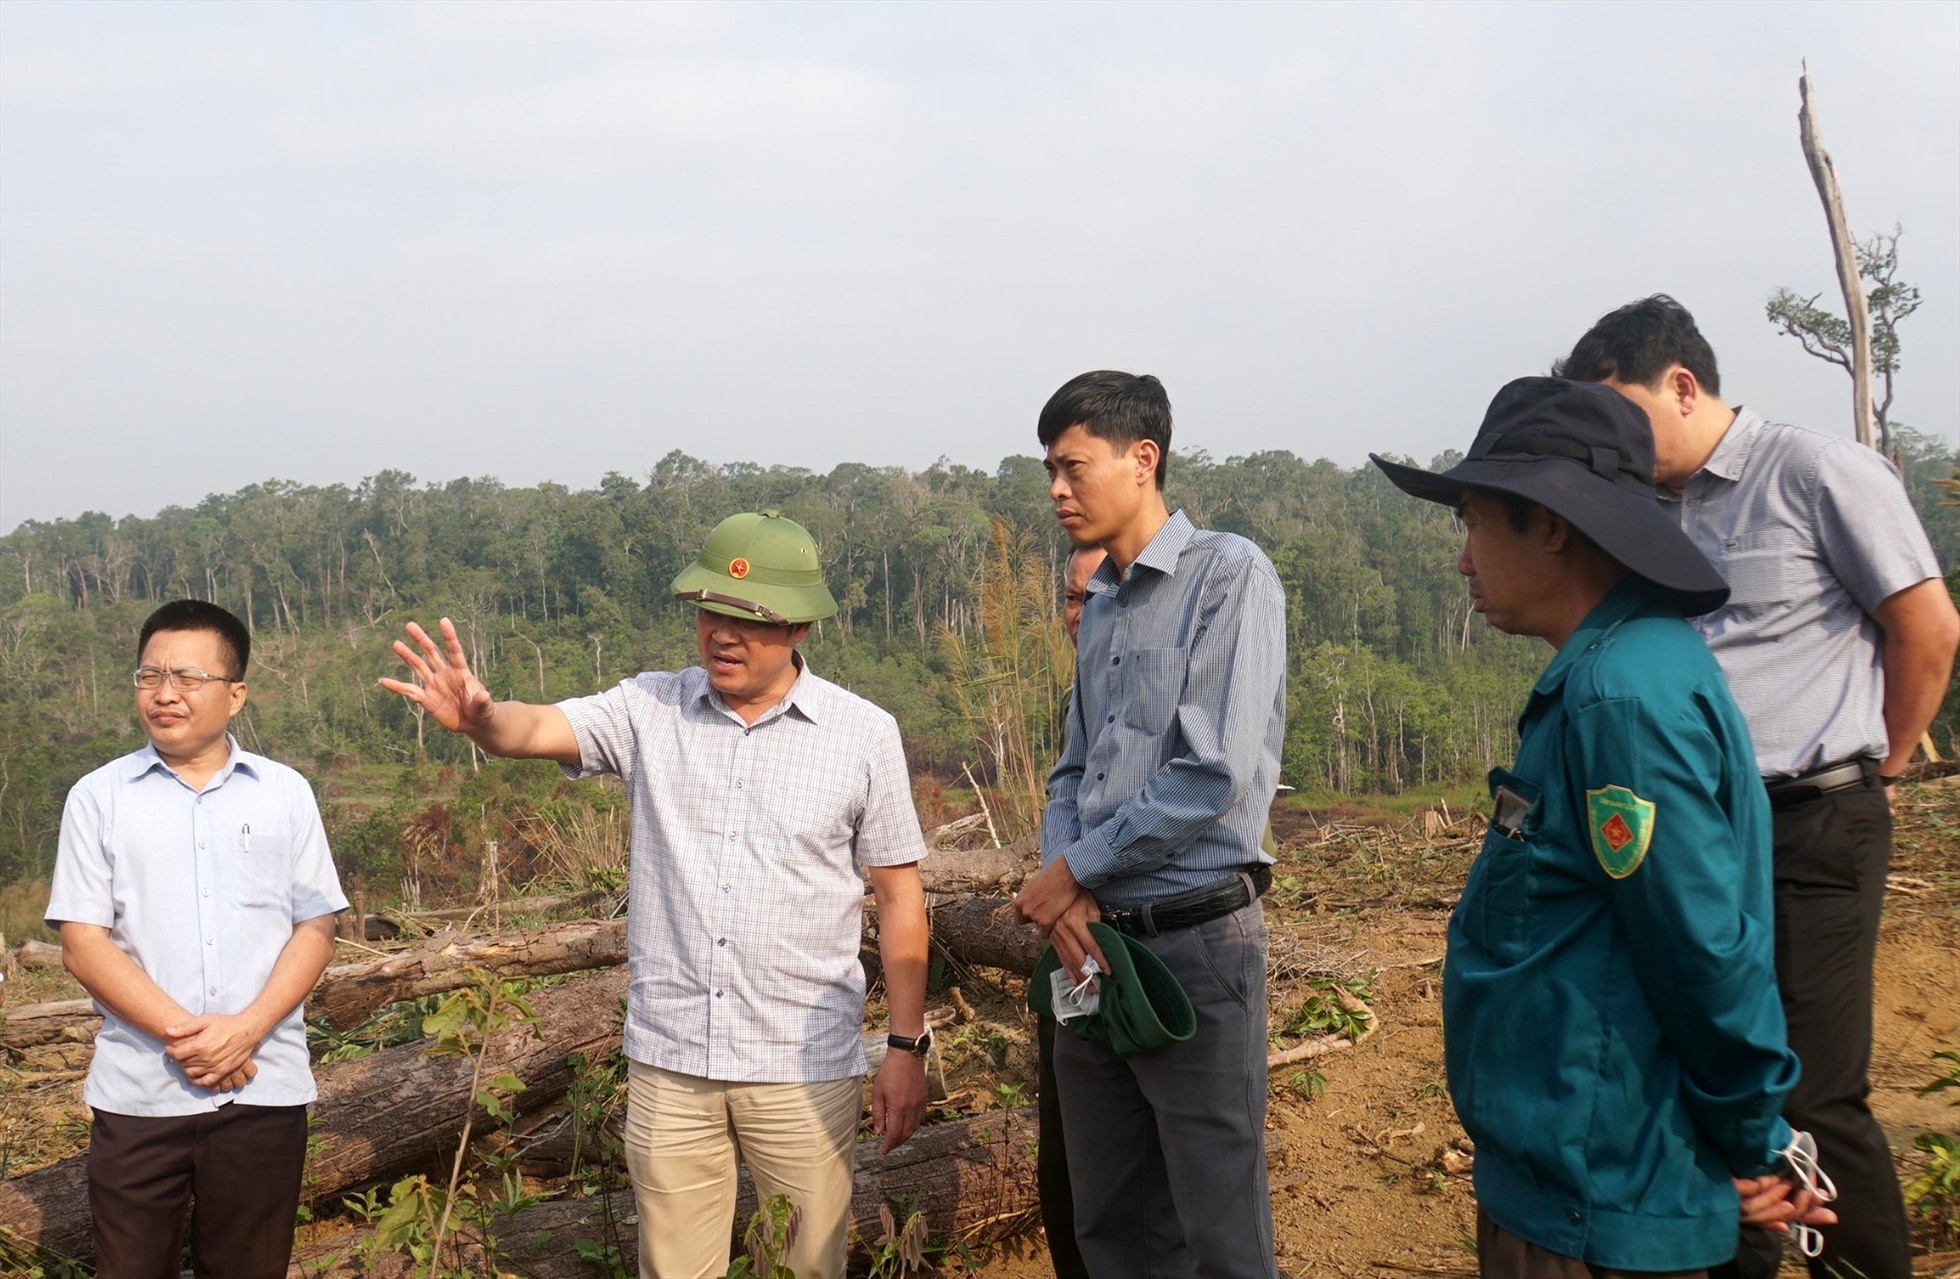 Phó Chủ tịch UBND tỉnh Đắk Nông Lê Trongh Yên chỉ đạo các ngành chức năng, địa phương cần kiên quyết xử lý tình trạng lấn chiếm làm nhà ở trái phép trên đất lâm nghiệp. Ảnh: Đức Hùng